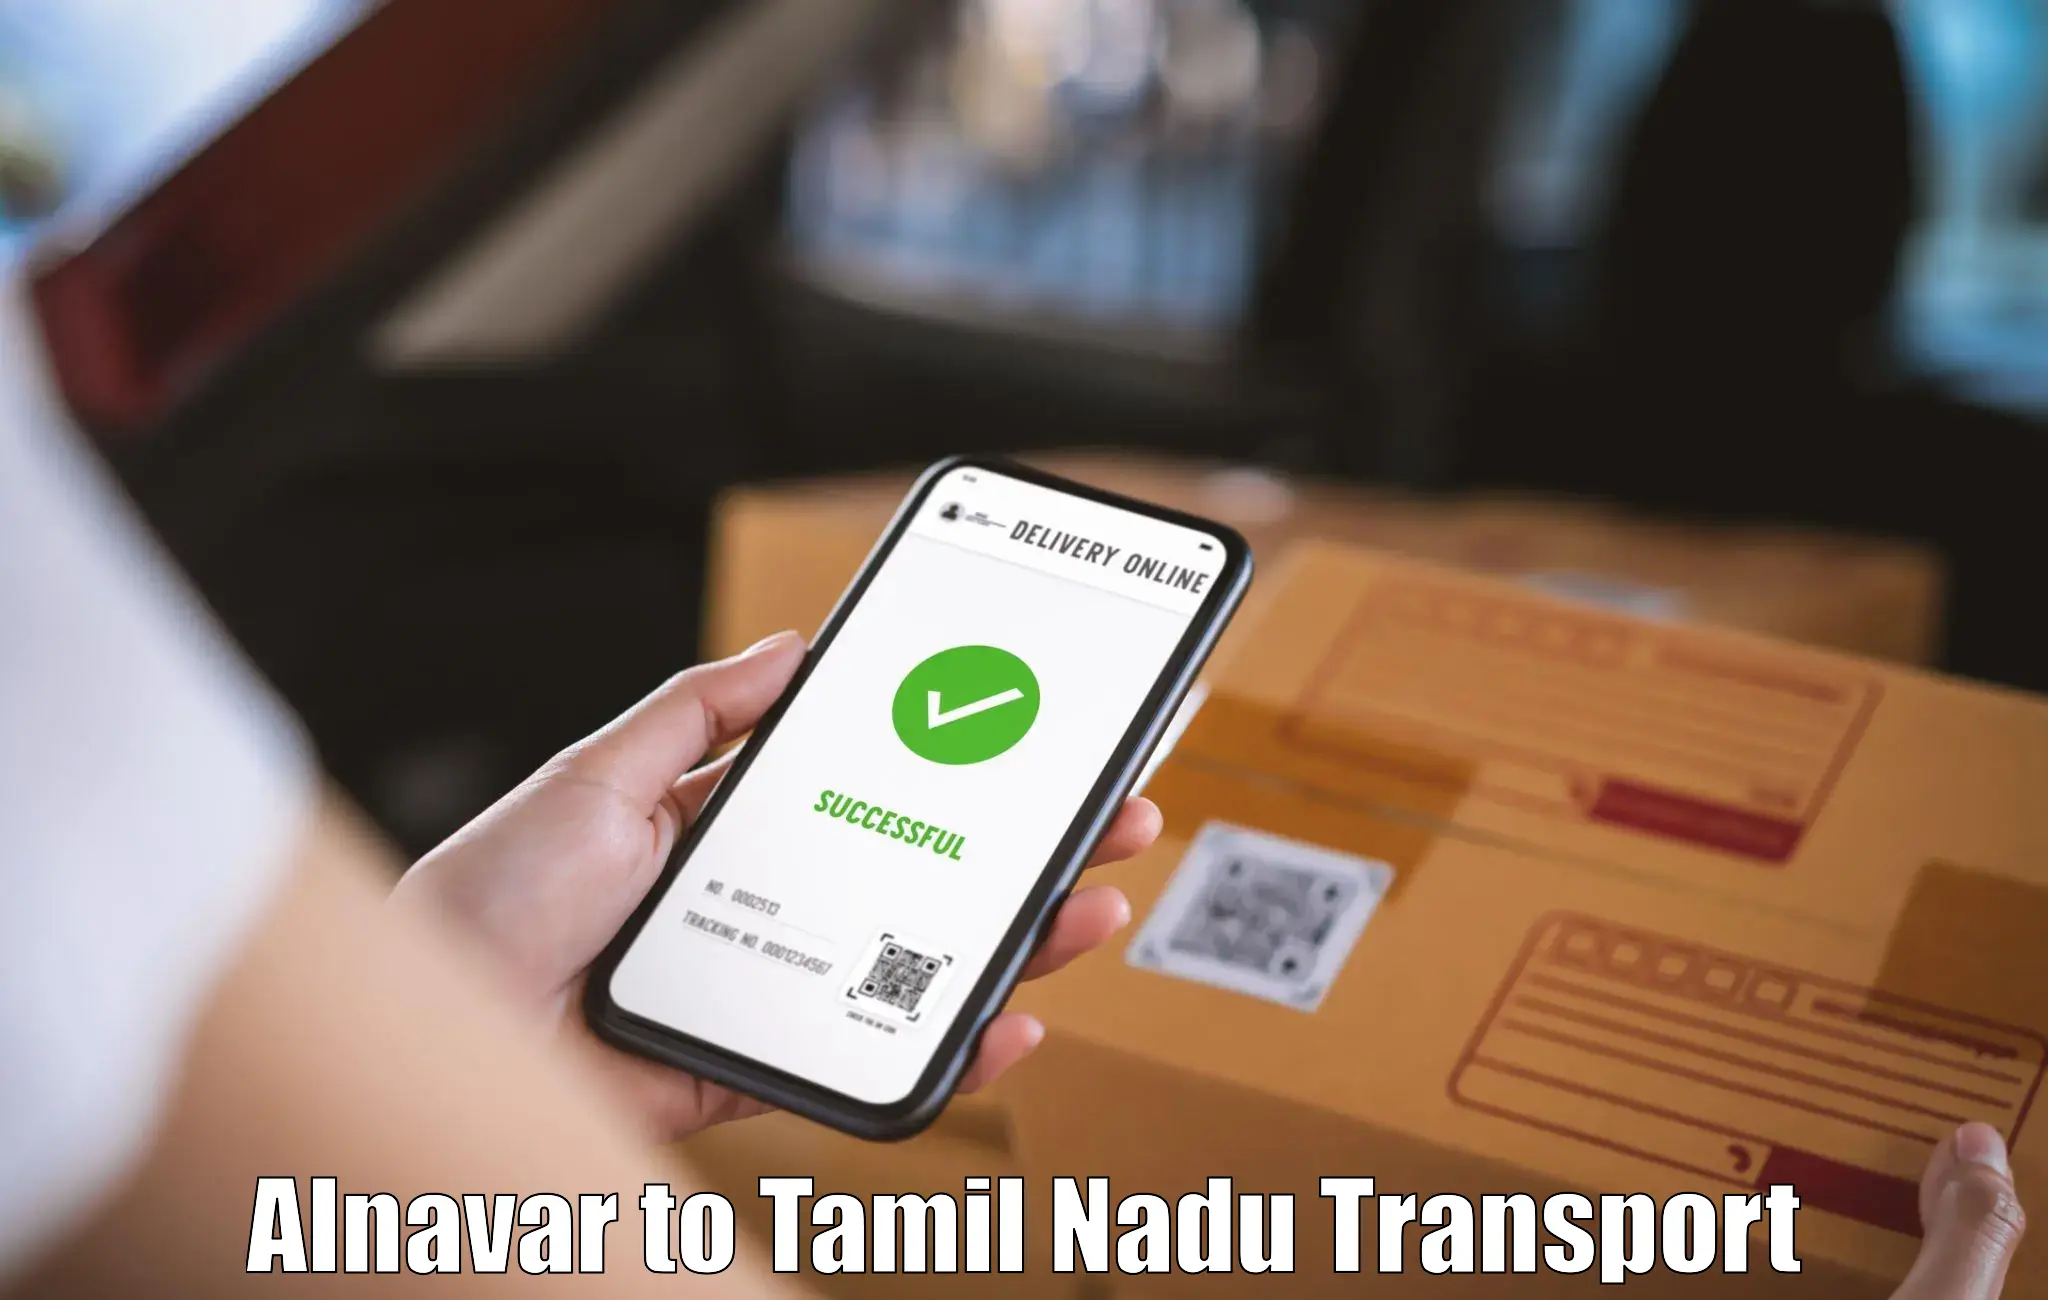 Road transport services Alnavar to Kanyakumari